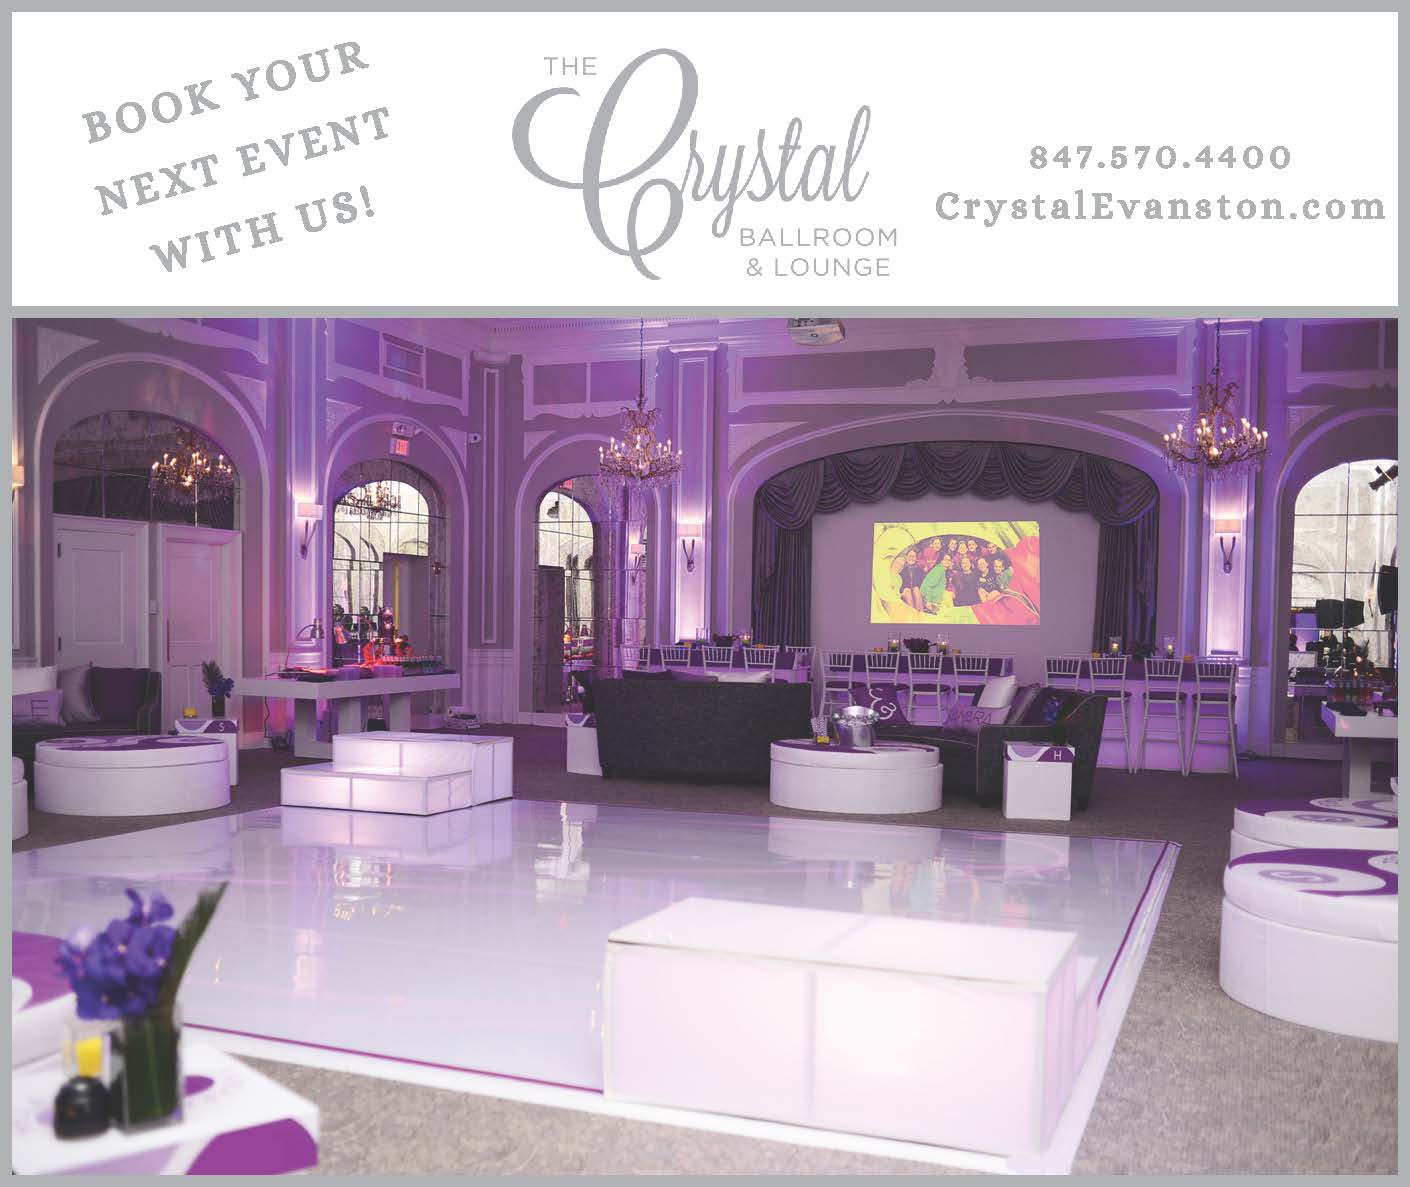 The Crystal Ballroom & Lounge